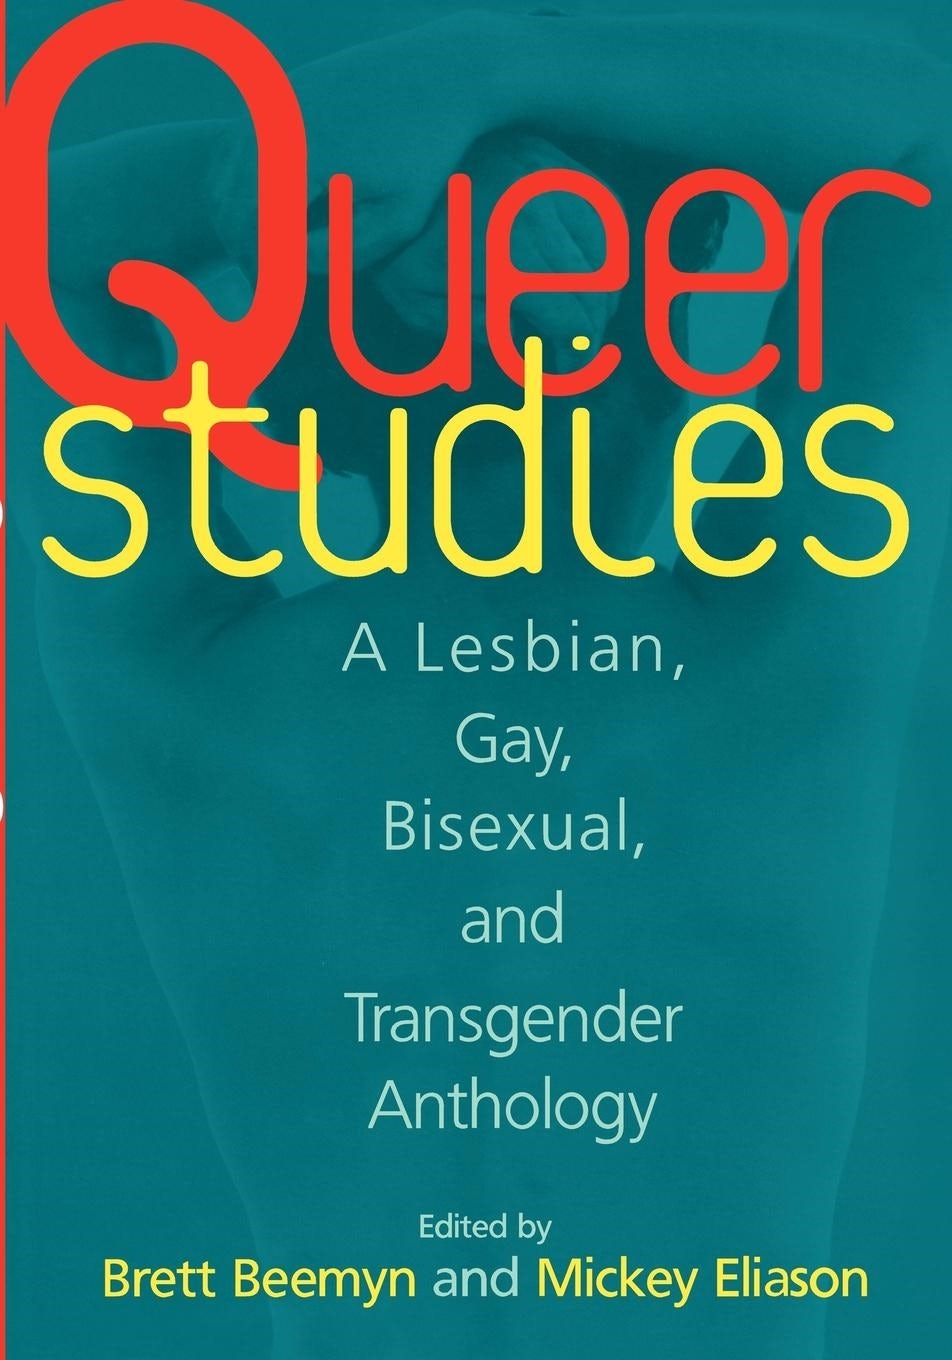 Queer Game Studies by Bonnie Ruberg